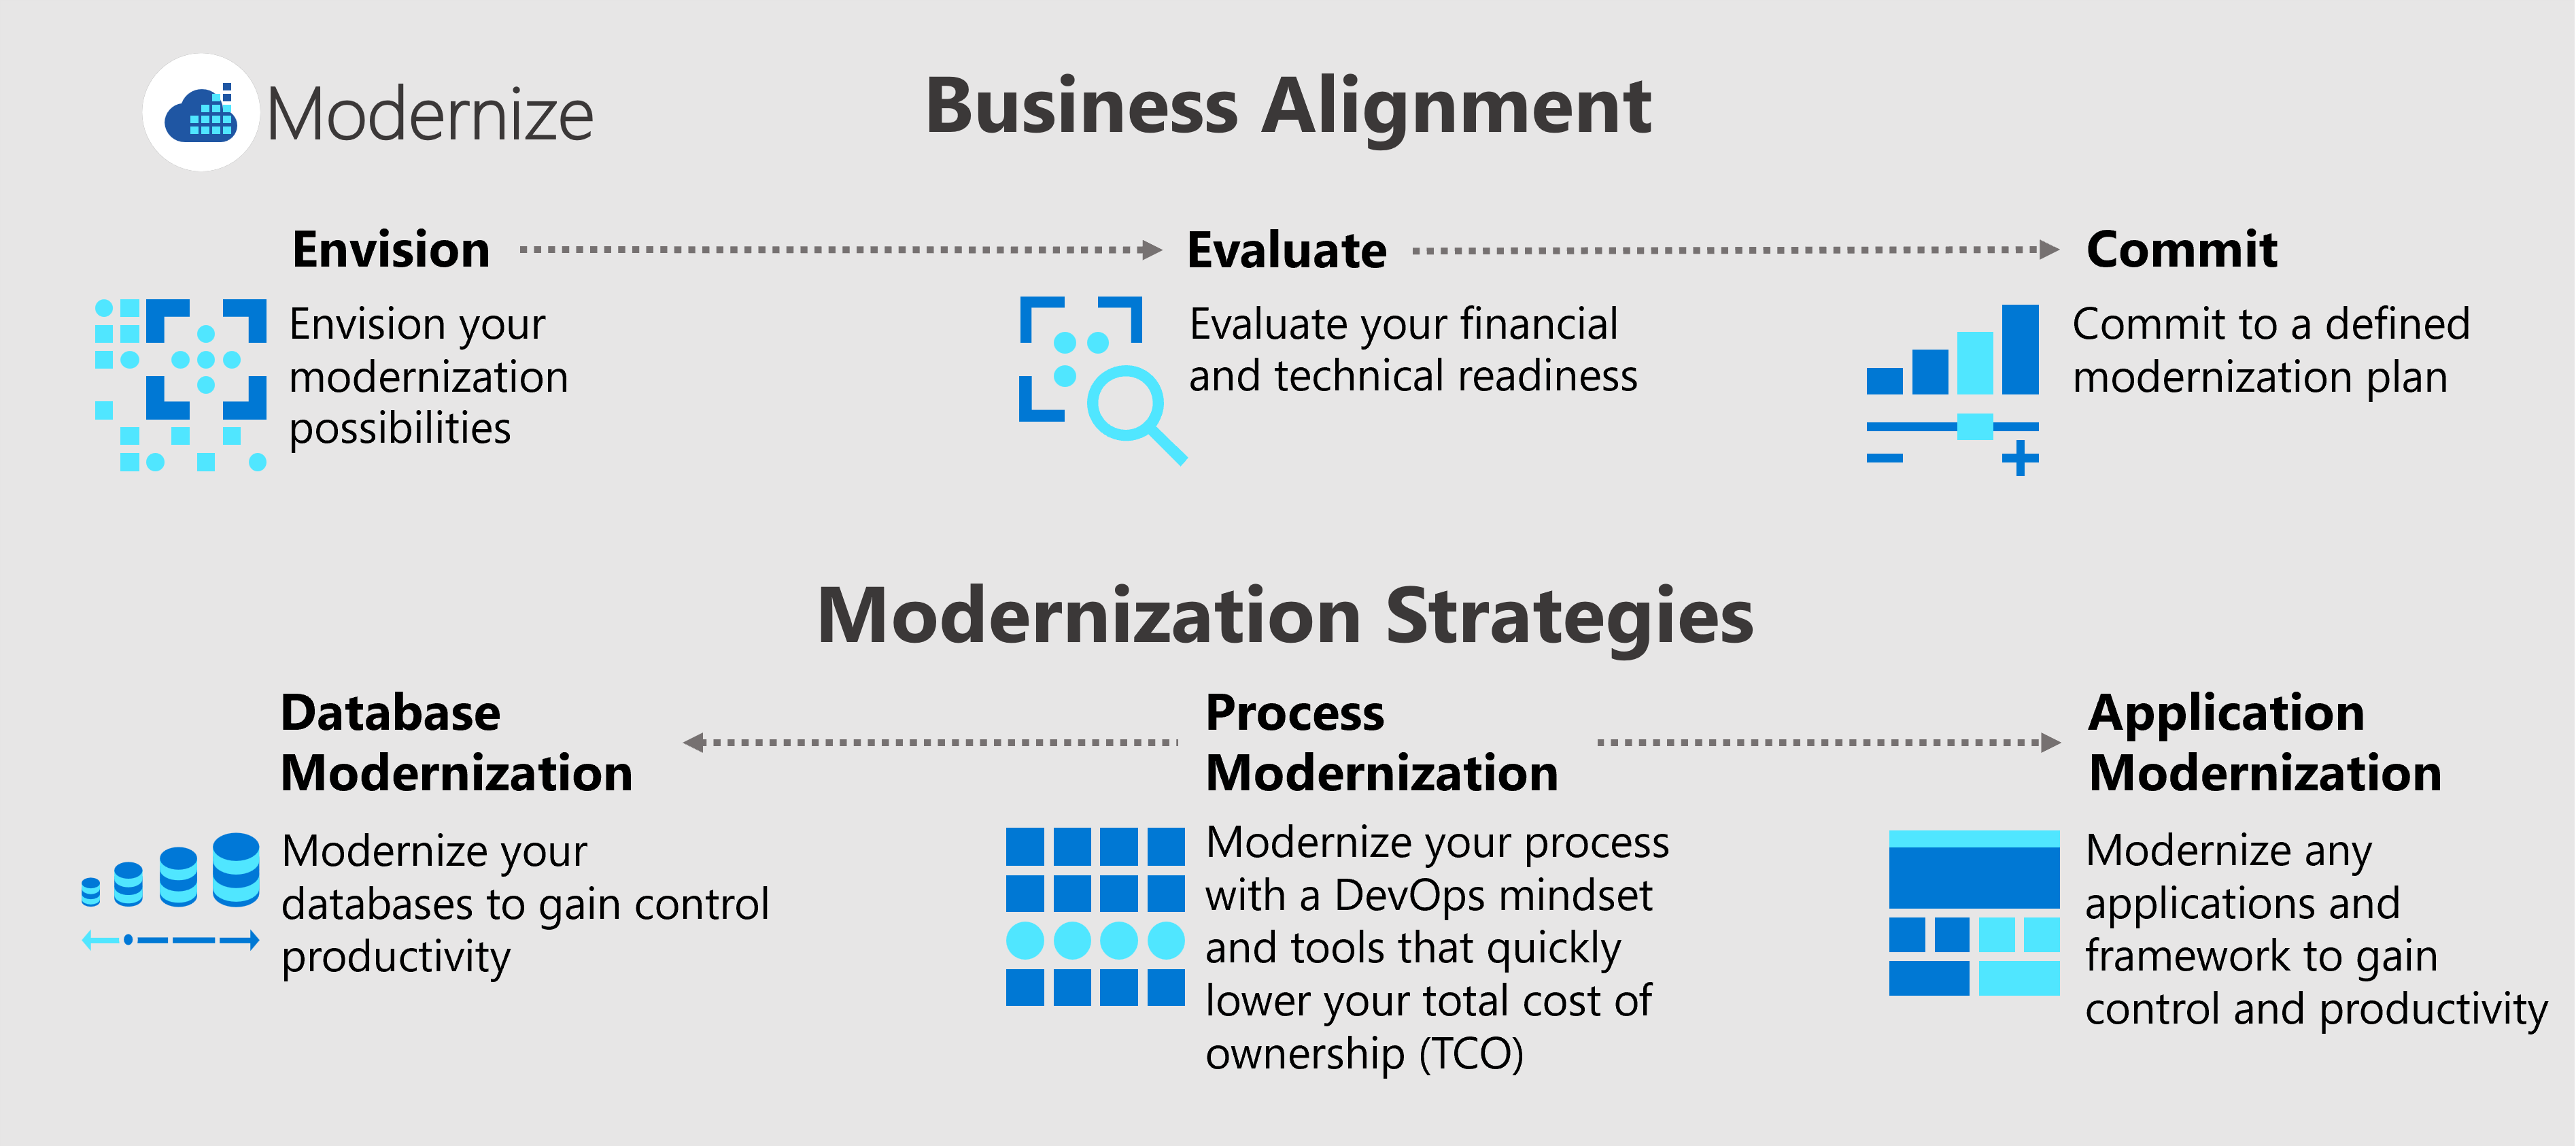 此图显示了三个业务一致性流程， (设想、评估和提交) ，以及三个现代化策略， (流程、应用程序和数据库现代化) 。